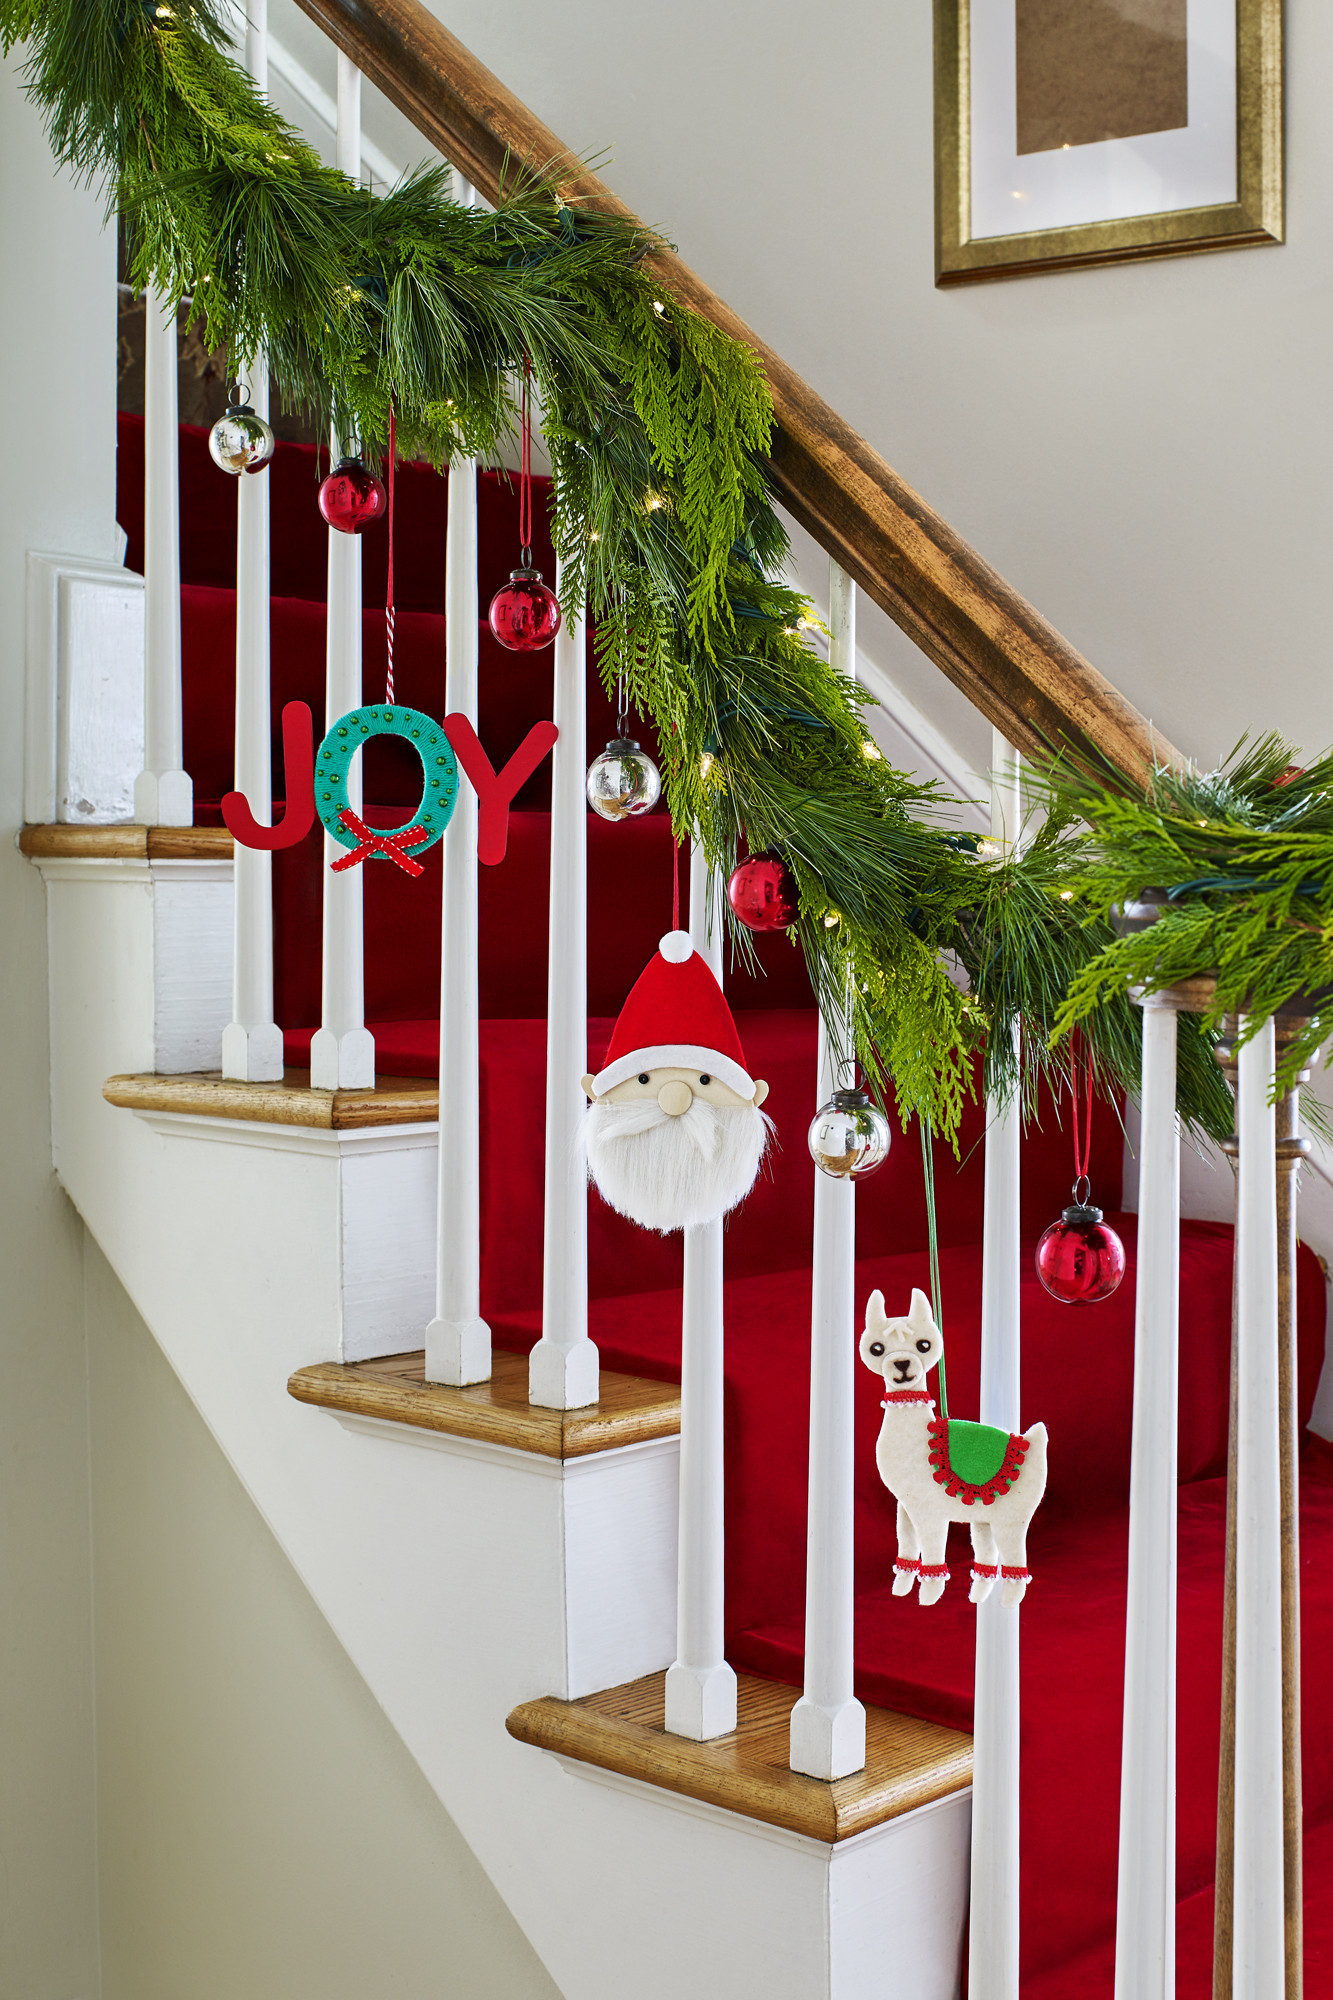 DIY Christmas Decorations
 32 Homemade DIY Christmas Ornament Craft Ideas How To